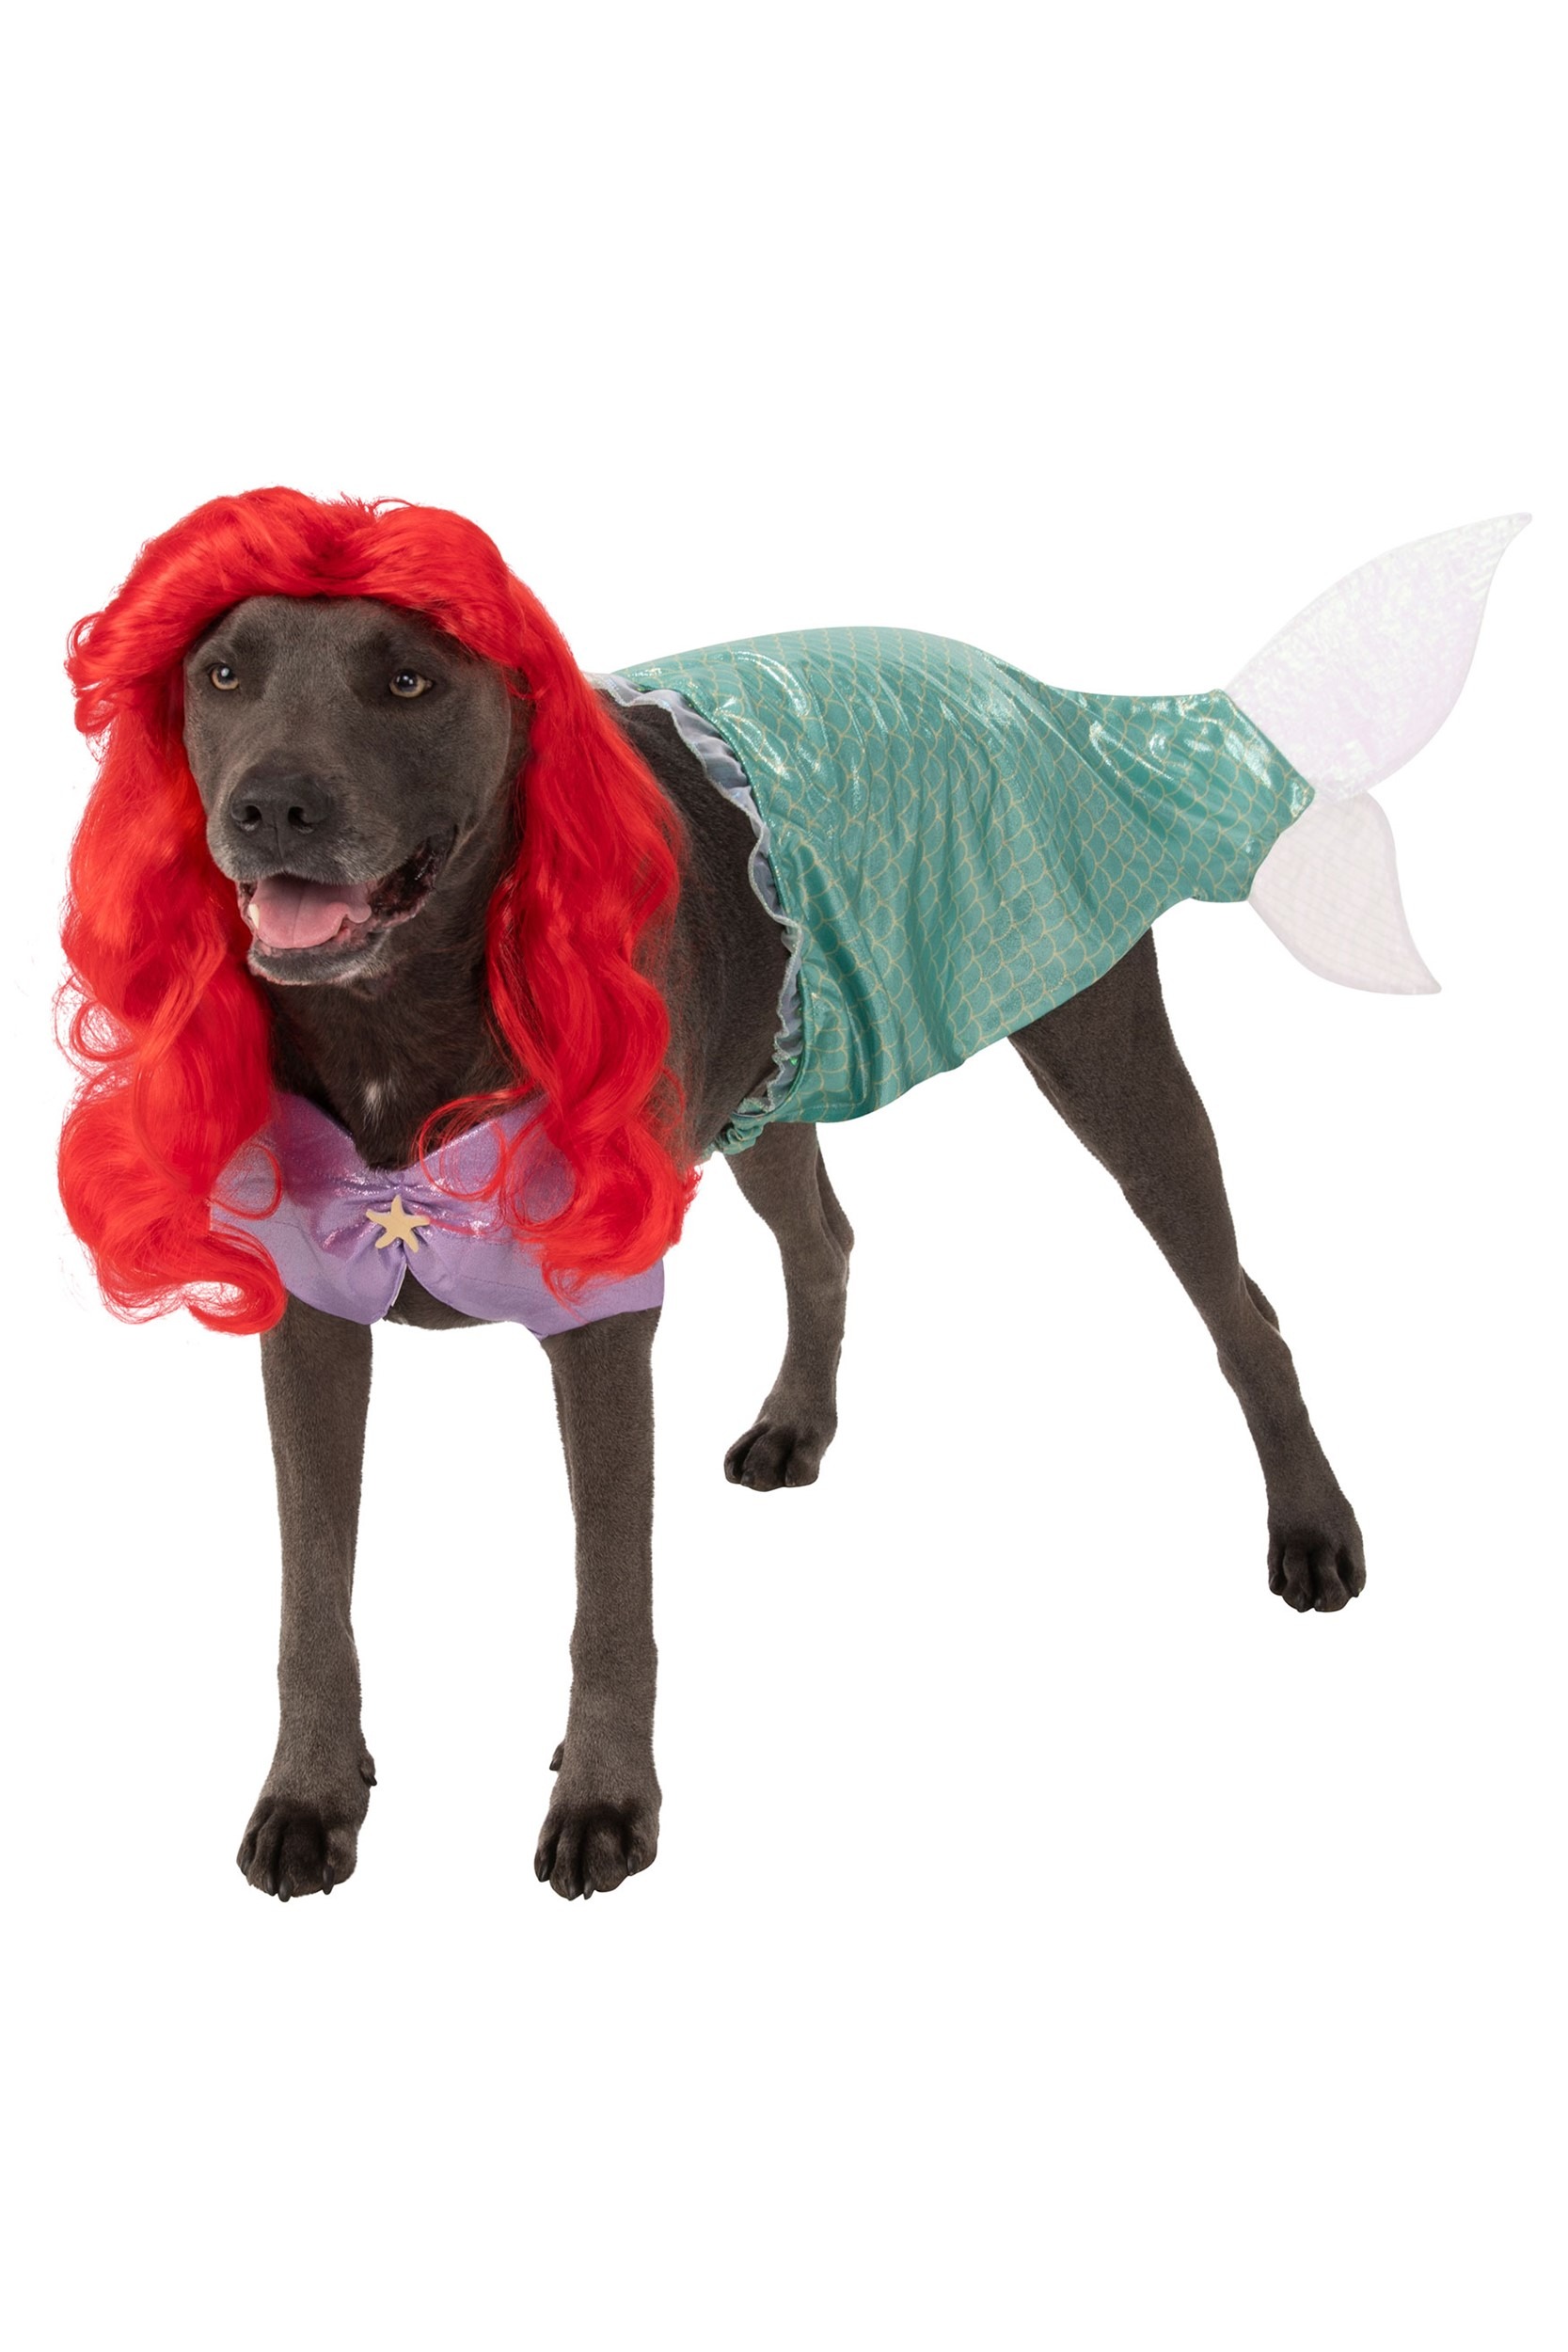 Plus Size The Little Mermaid Ariel Dog Fancy Dress Costume